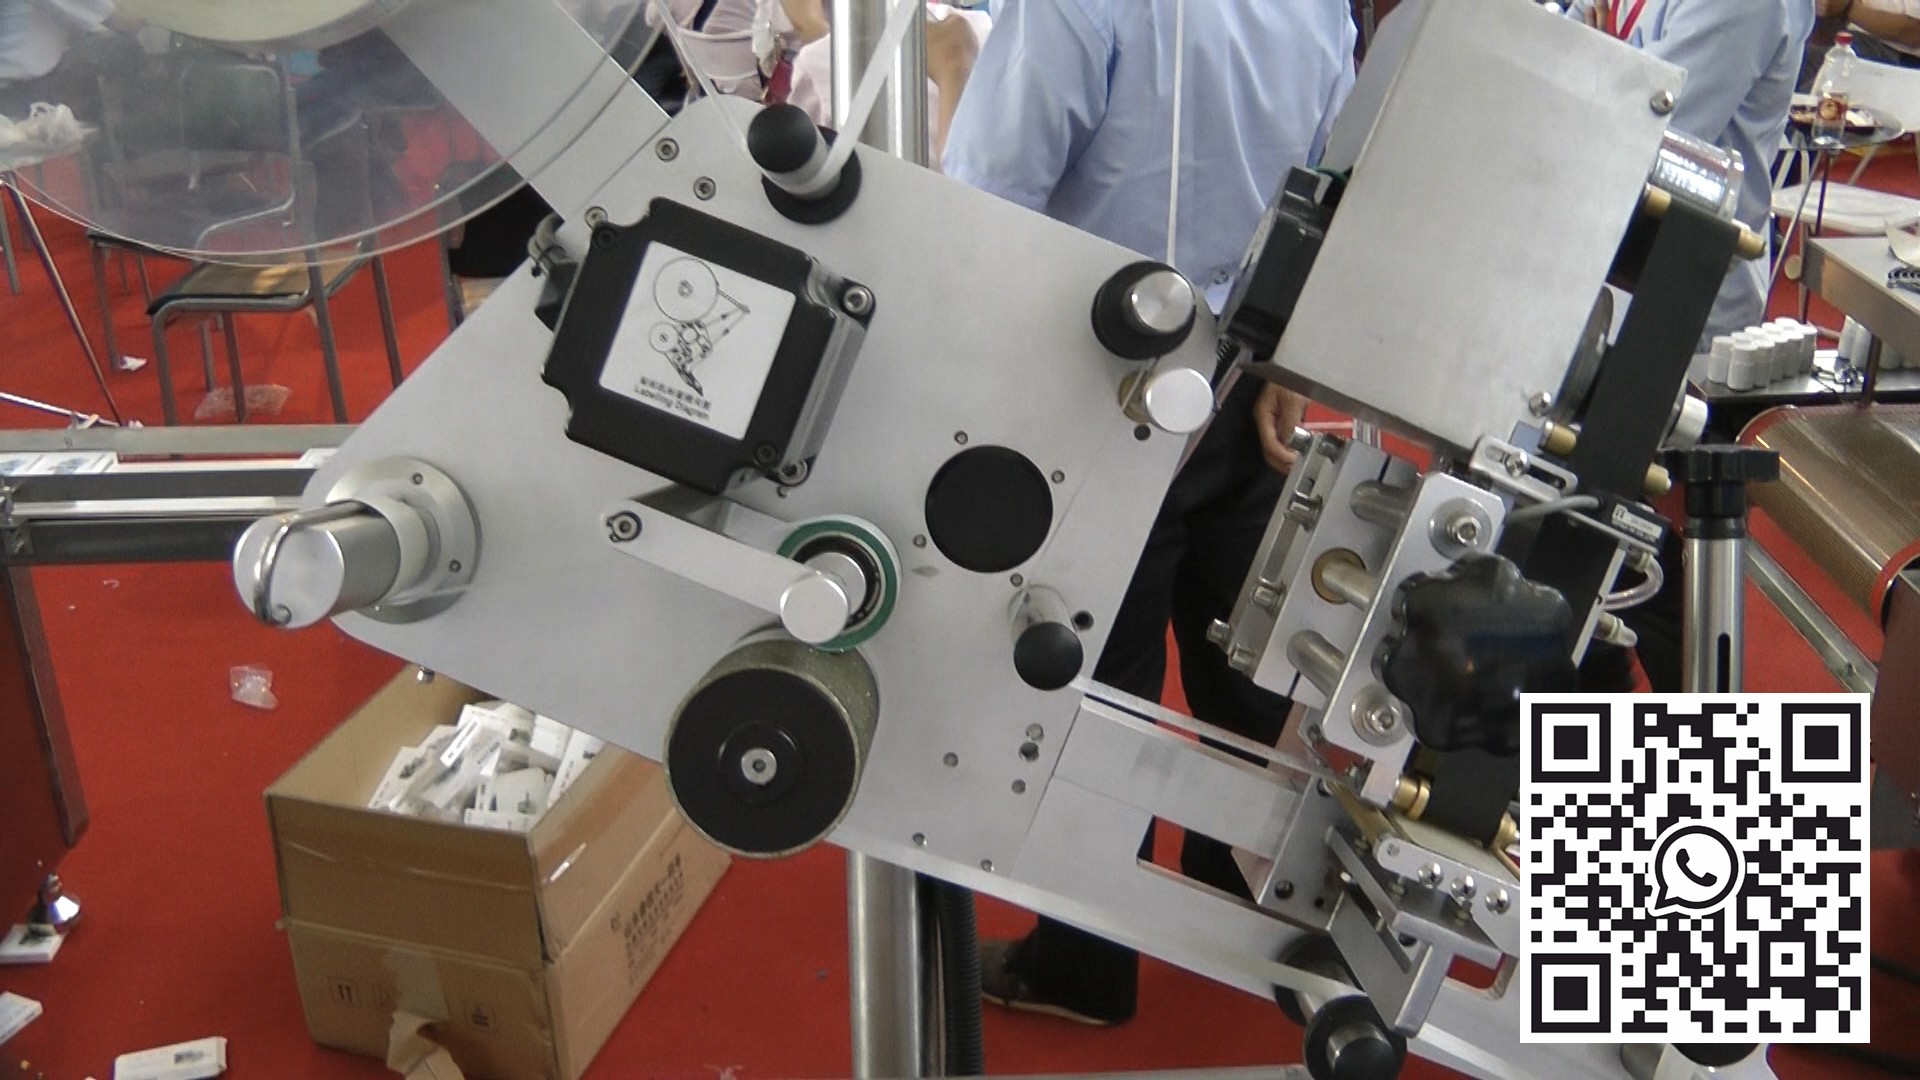 معدات وضع العلامات الأوتوماتيكية على قوارير البنسلين في صناعة الأدوية في ألمانيا